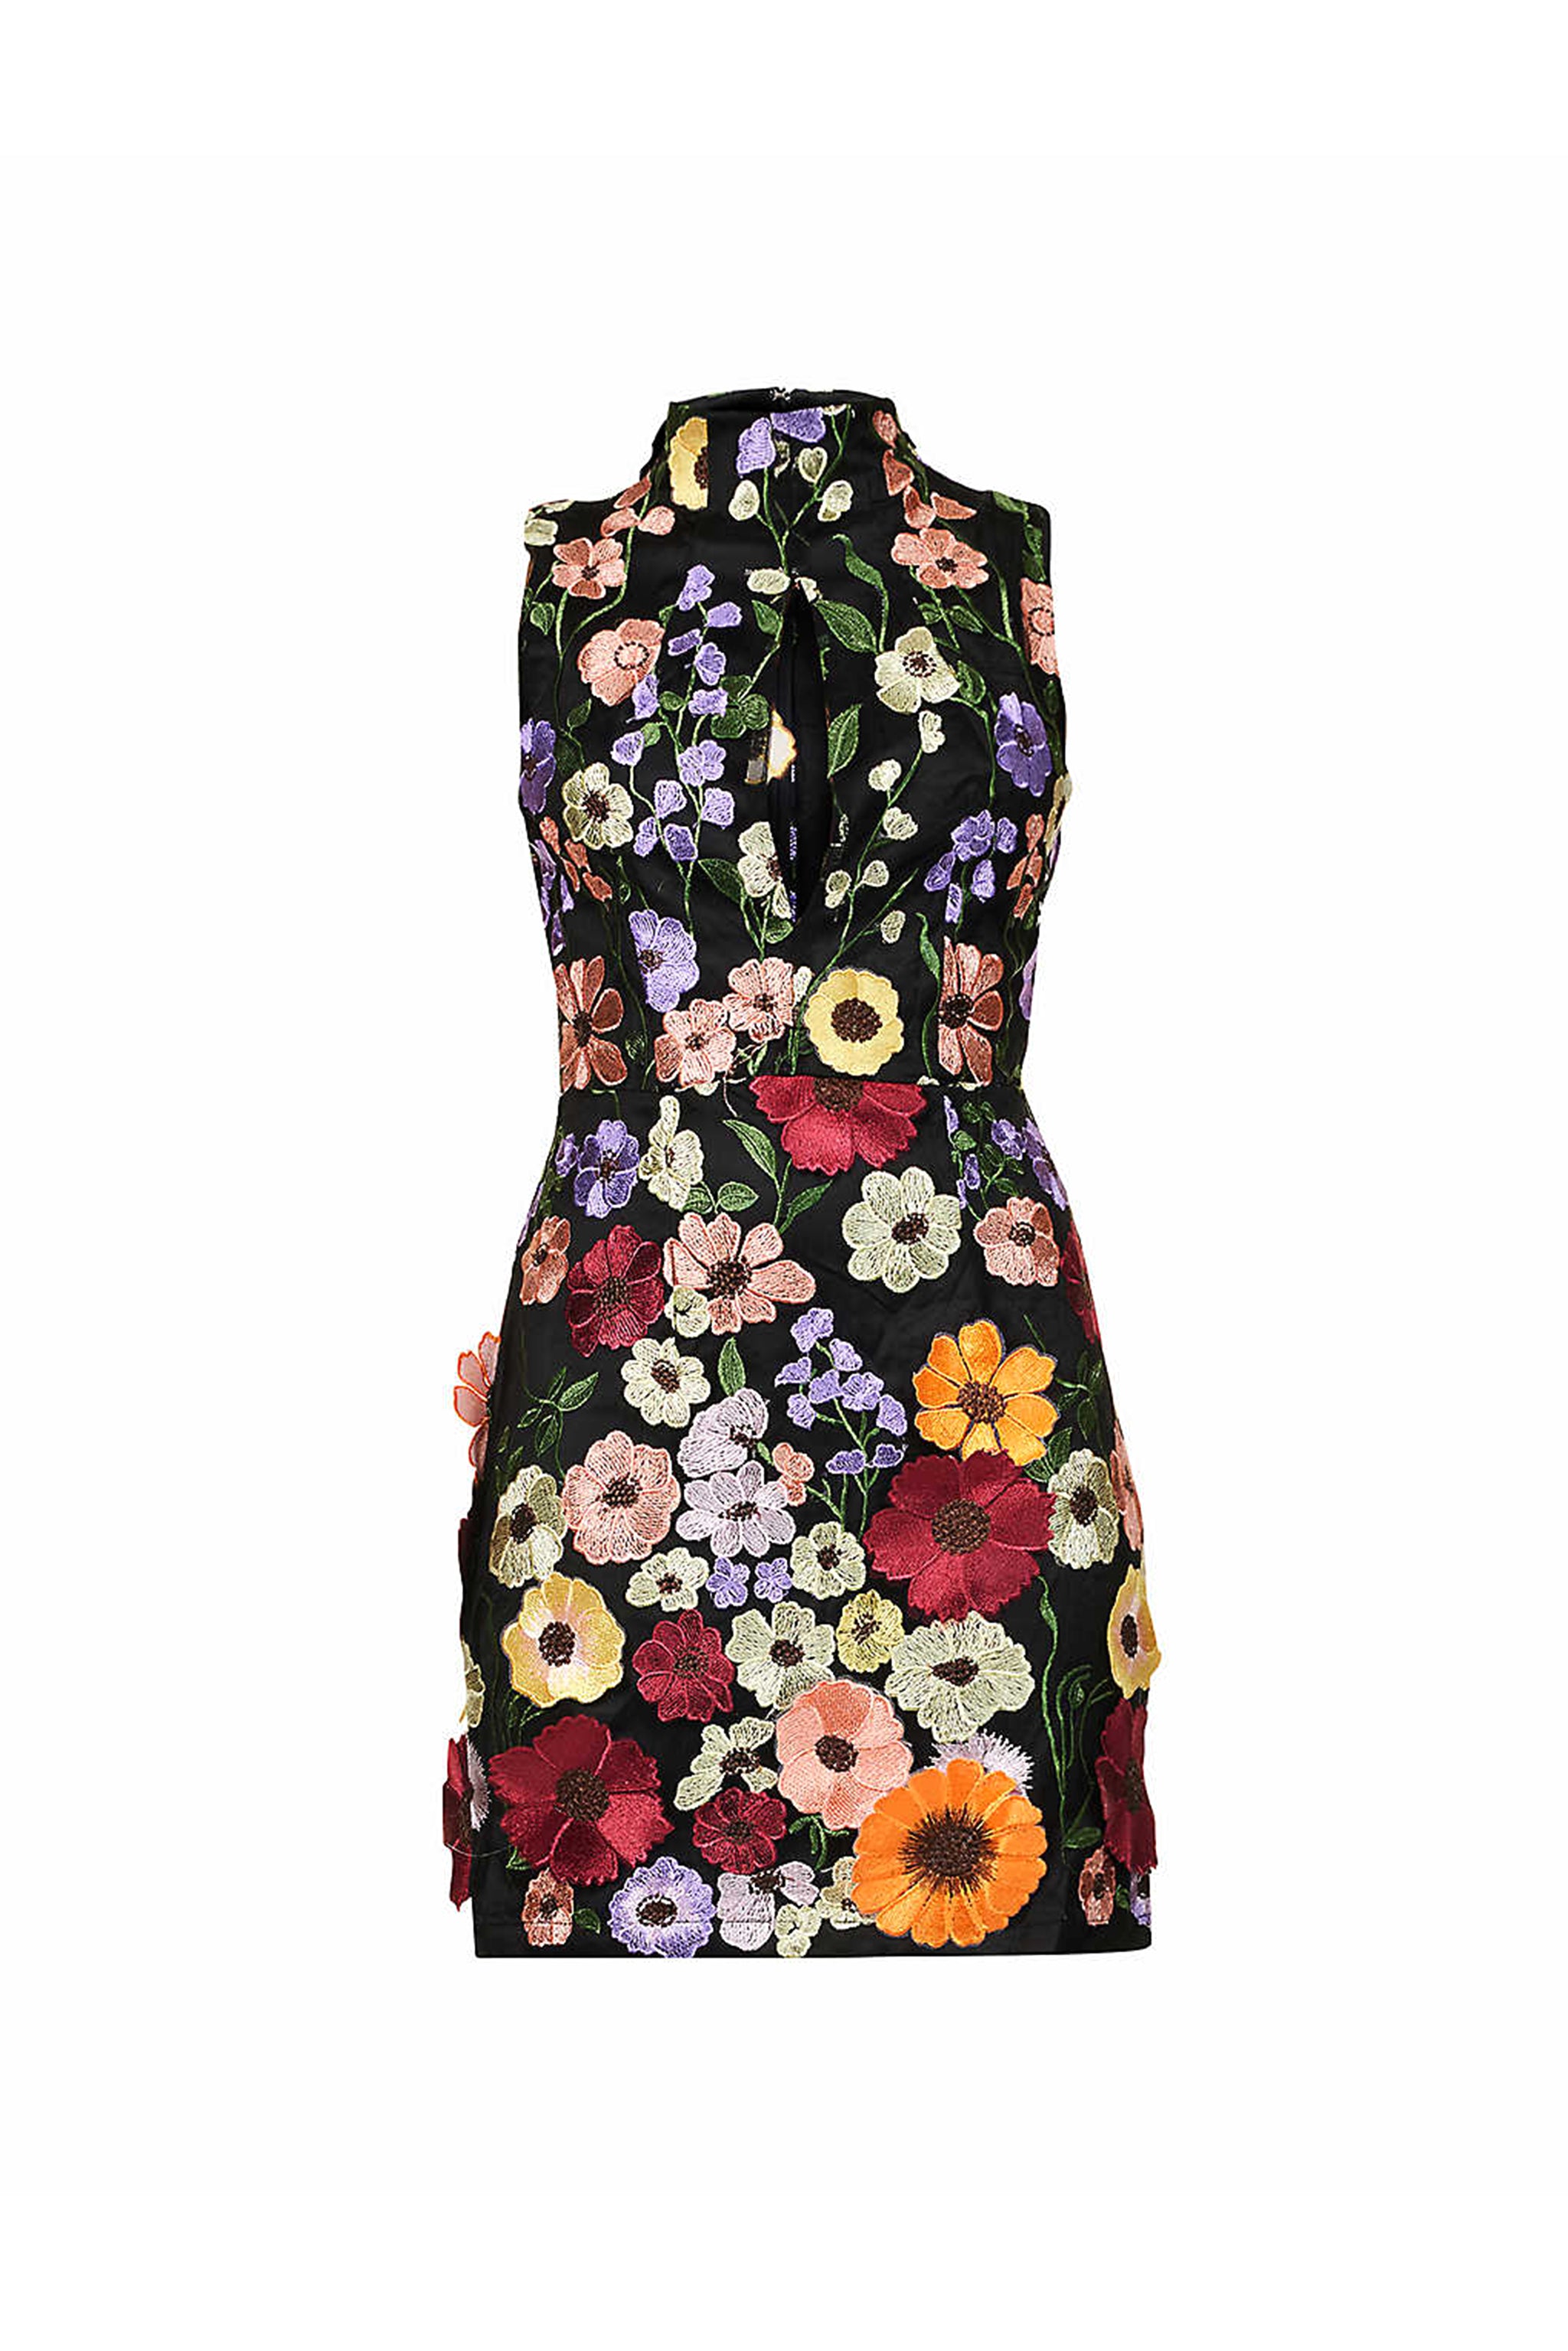 Cleo Black High Neck Sleeveless Floral Motif Mini Dress | AmyLynn